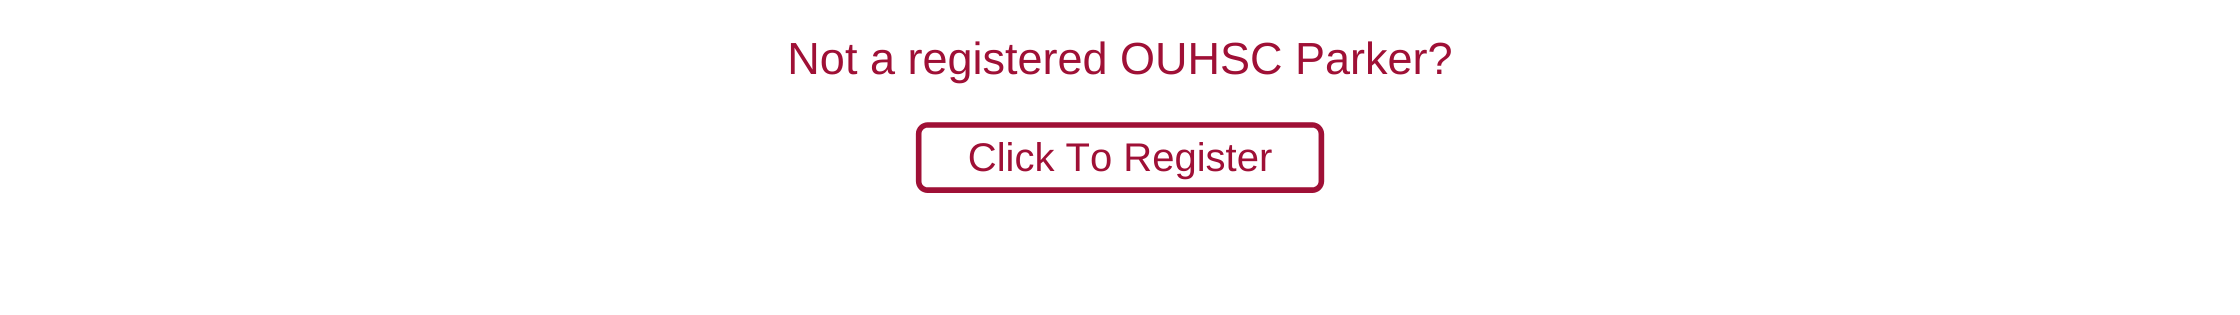 OUHSC Guest or Other Parker Registration